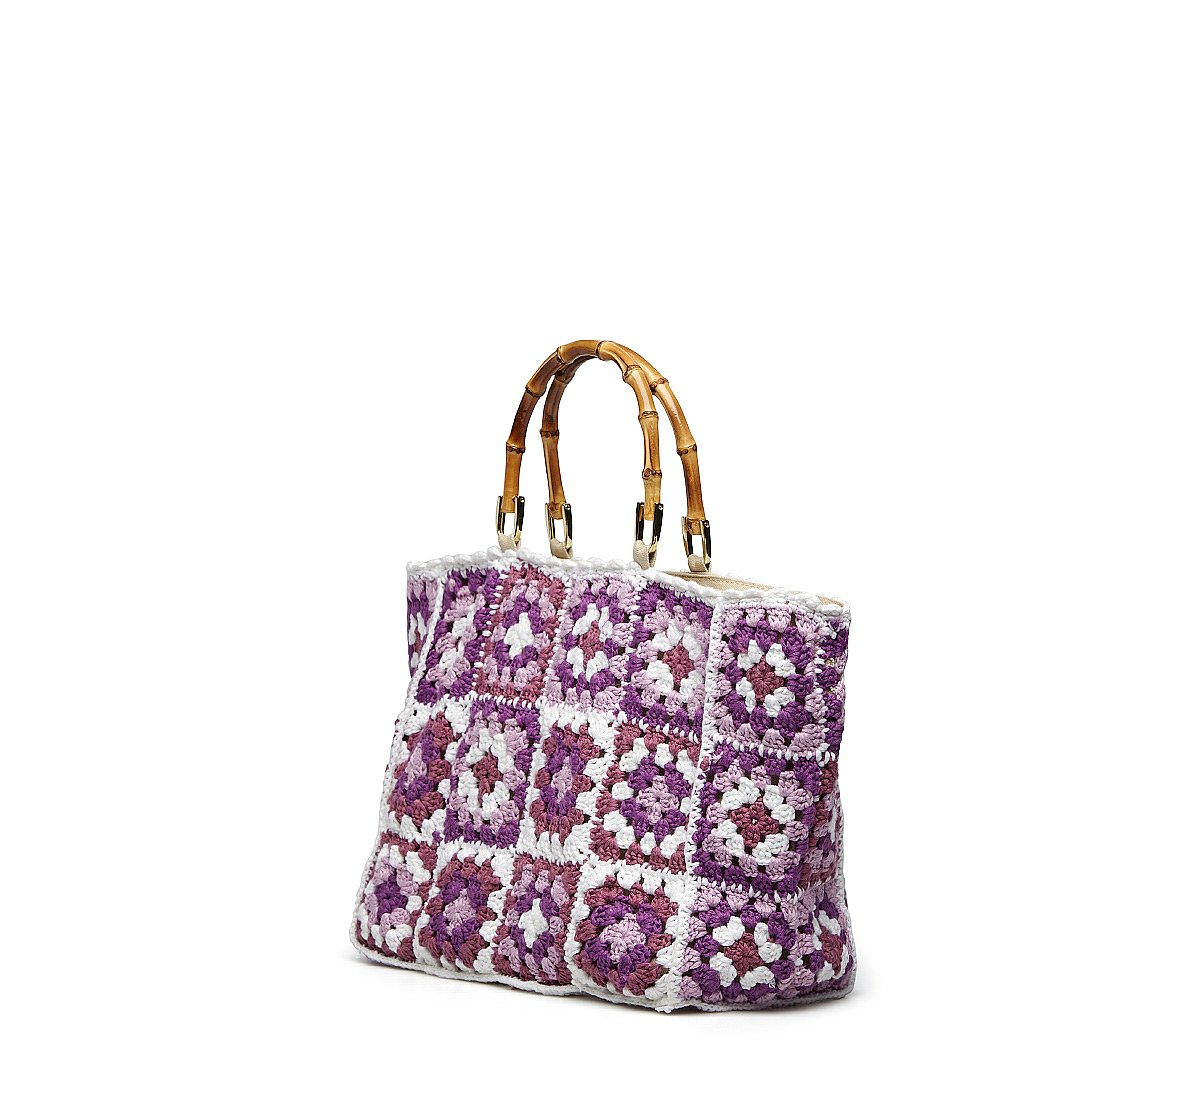 Small tricot handbag